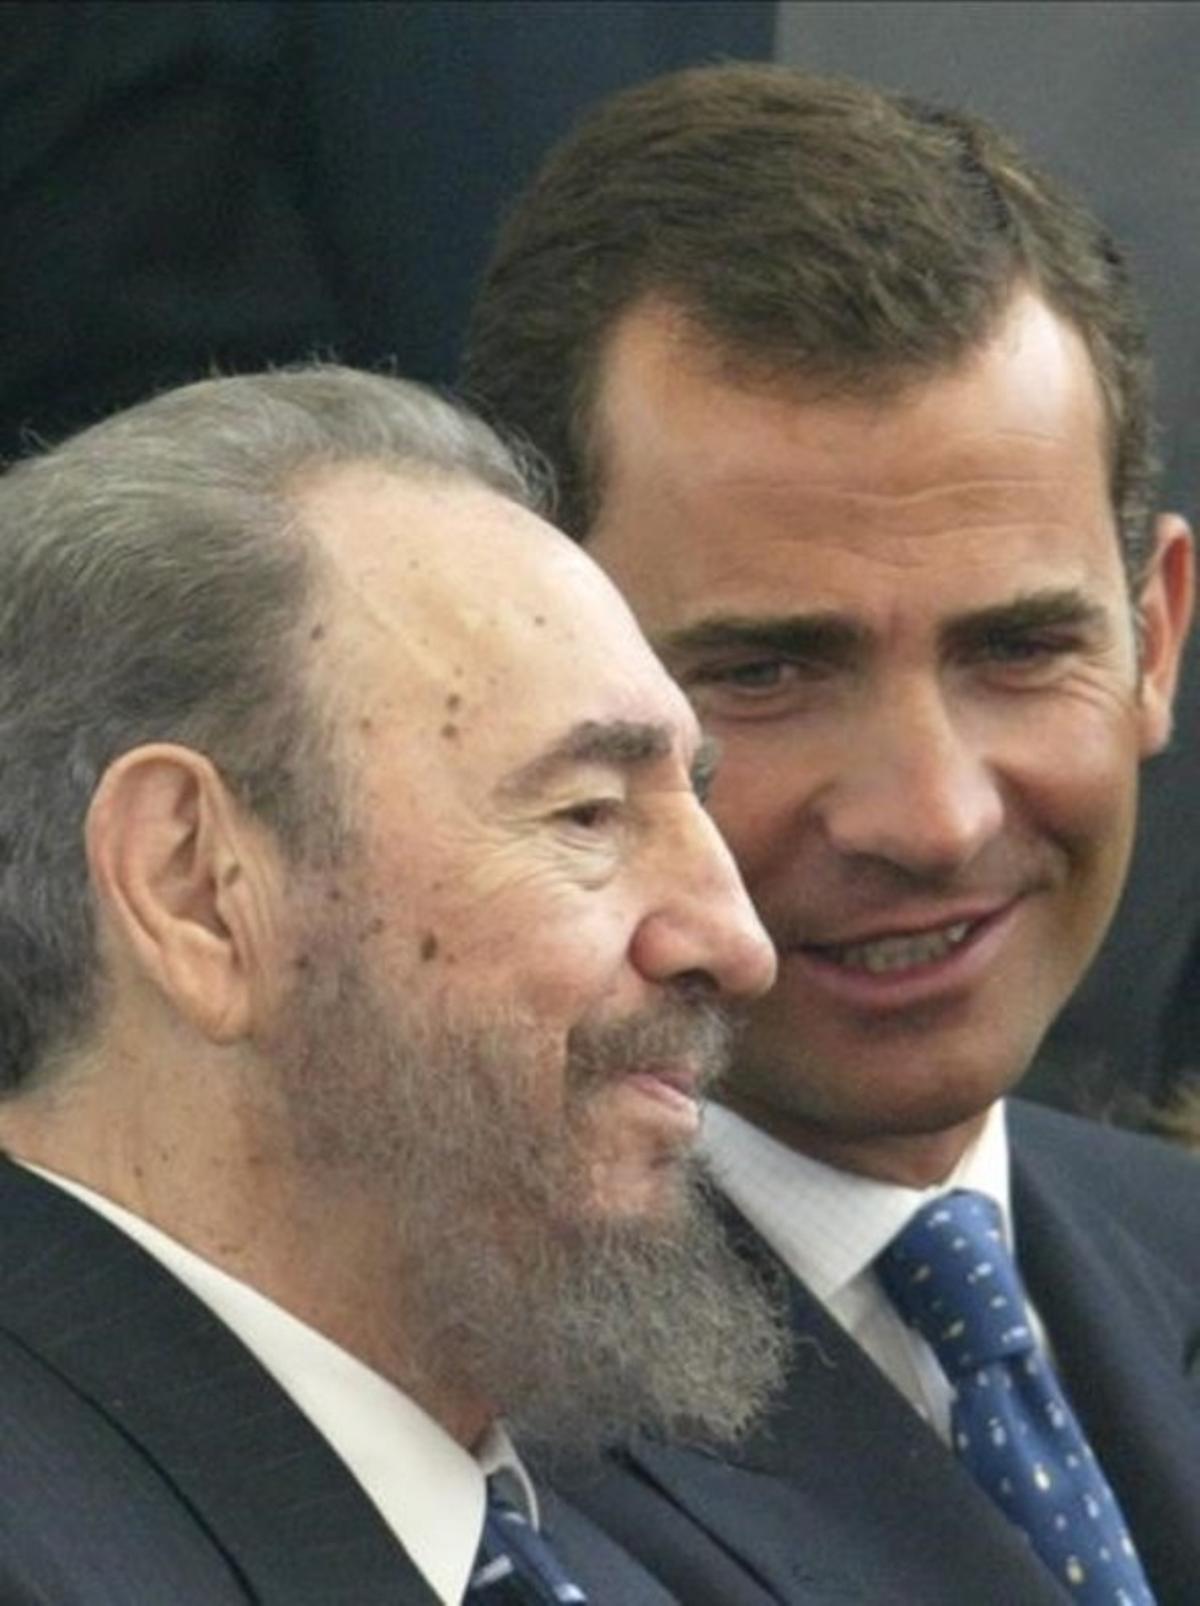 El rey Felipe VI destaca el "significado histórico" de Fidel Castro